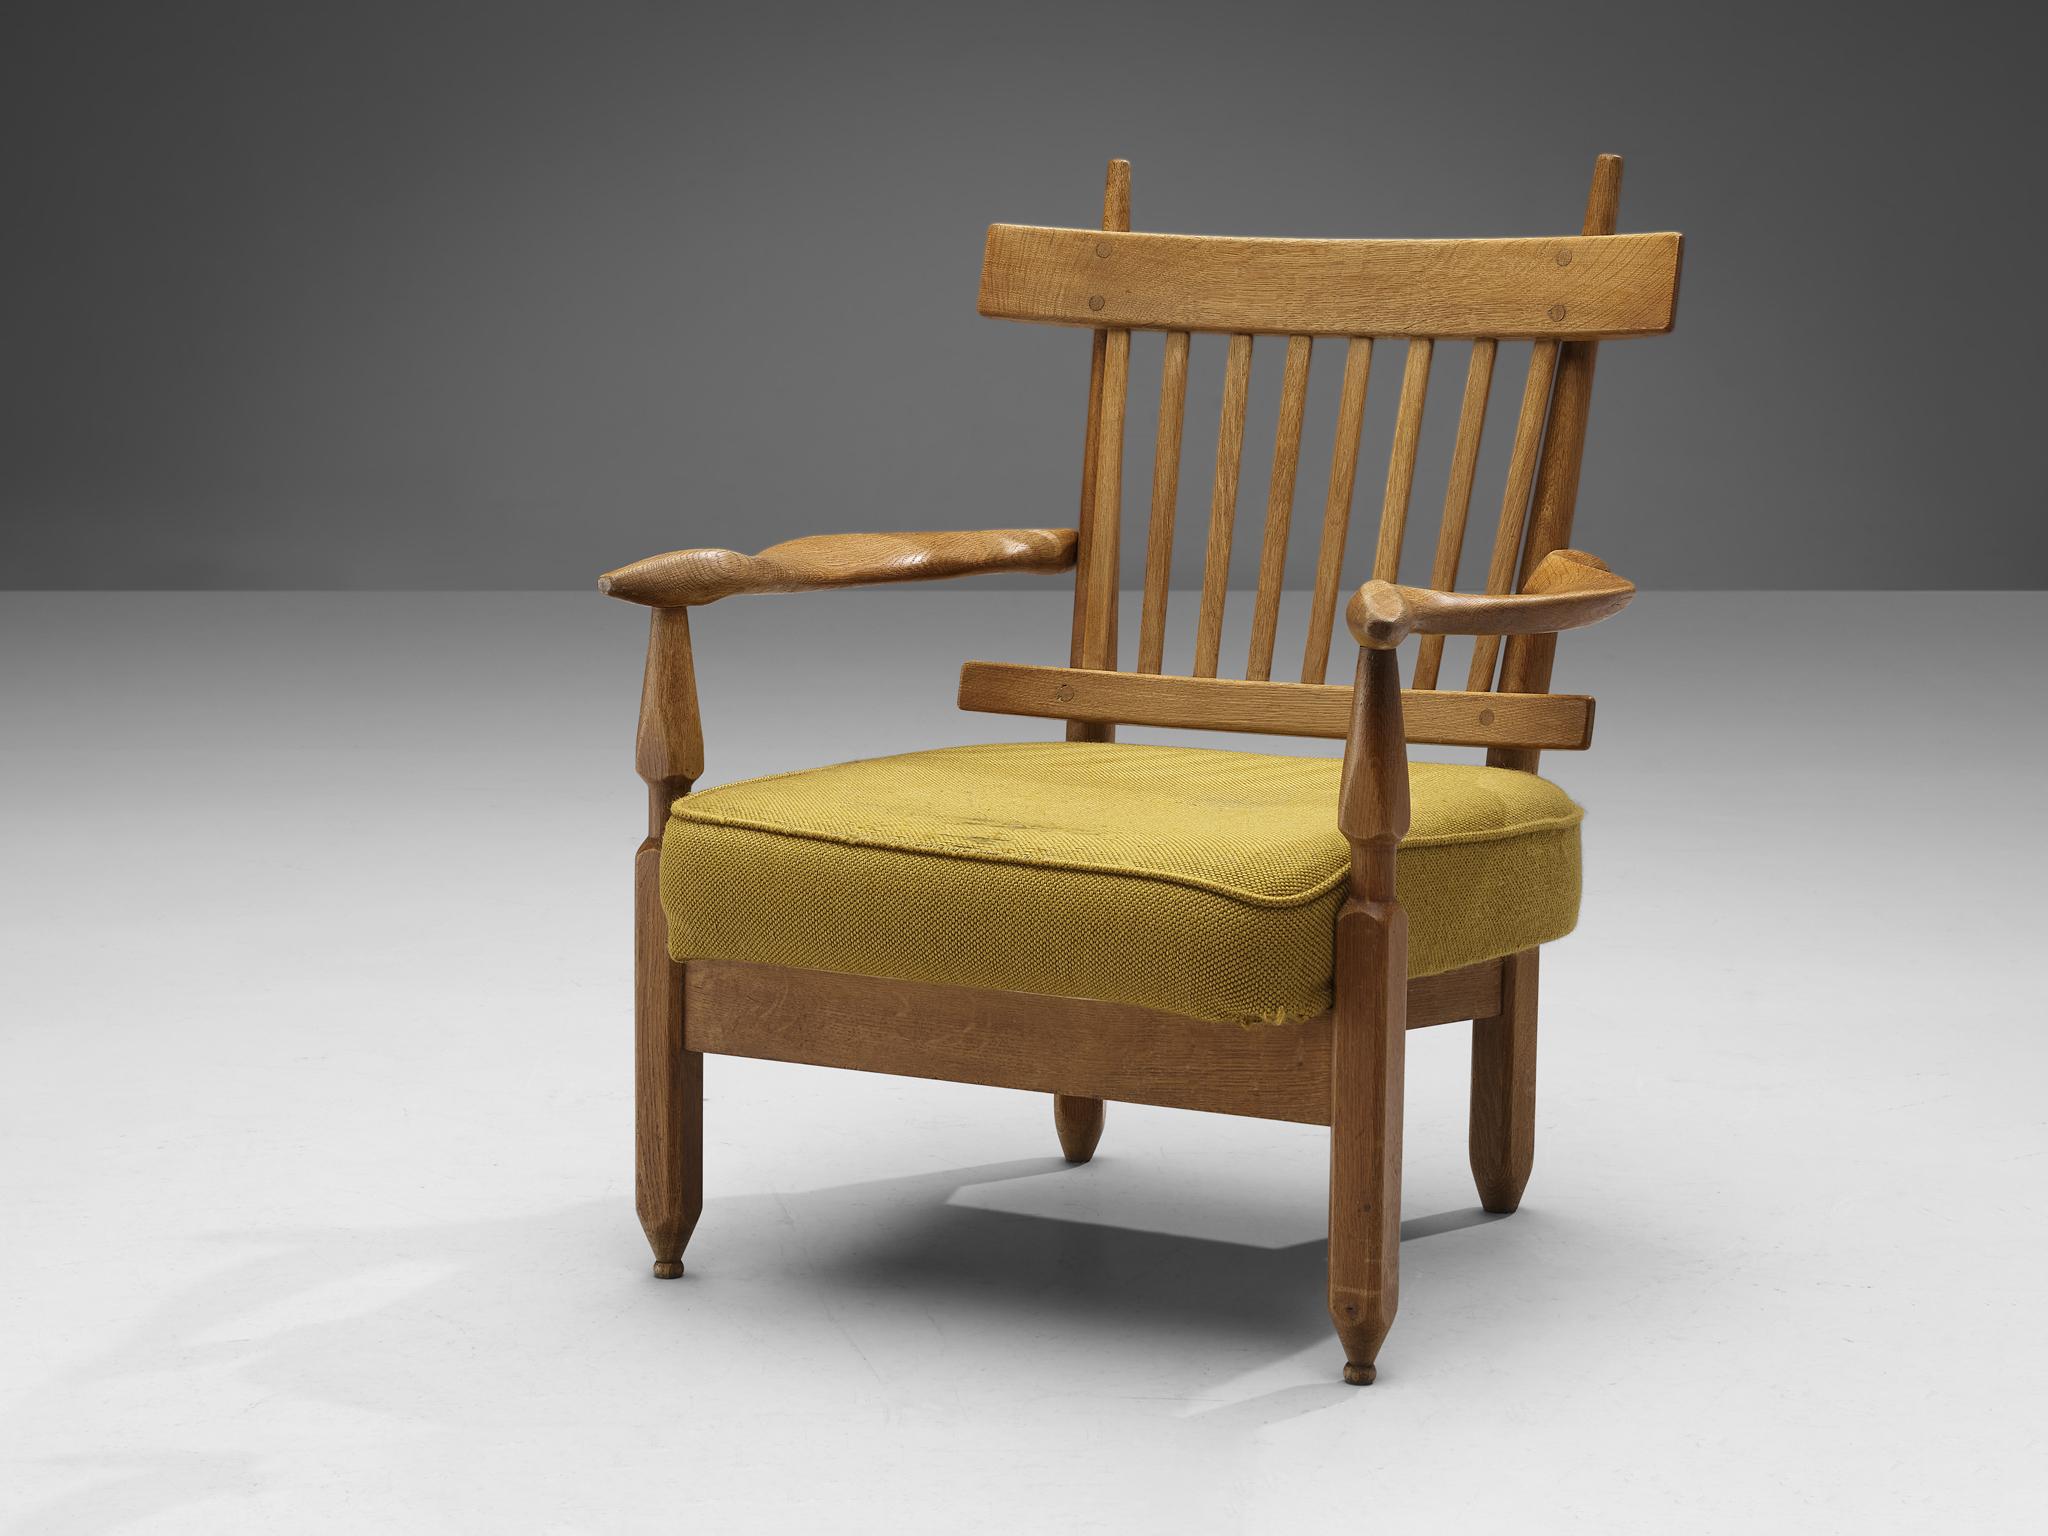 Guillerme & Chambron pour Votre Maison, chaise longue 'Petronille', chêne, tissu, France, 1965 

Cette chaise longue sculpturale nommée 'Petronille' est conçue par Guillerme et Chambron. Ils sont connus pour leurs meubles en chêne massif de haute